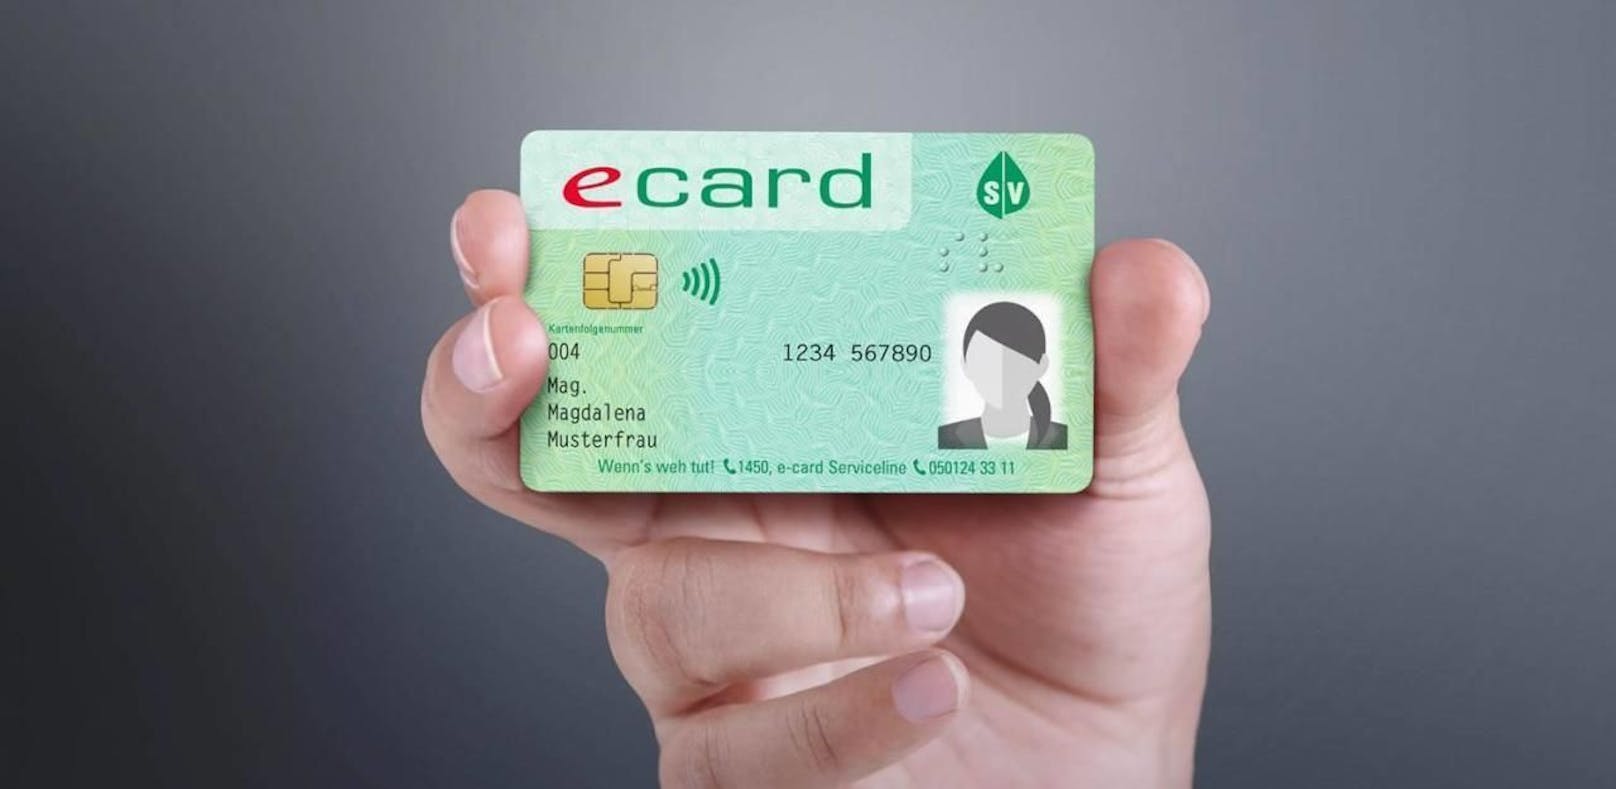 Ab 1.1.2020 gibt es eine neue Generation von E-Cards mit Fotos.